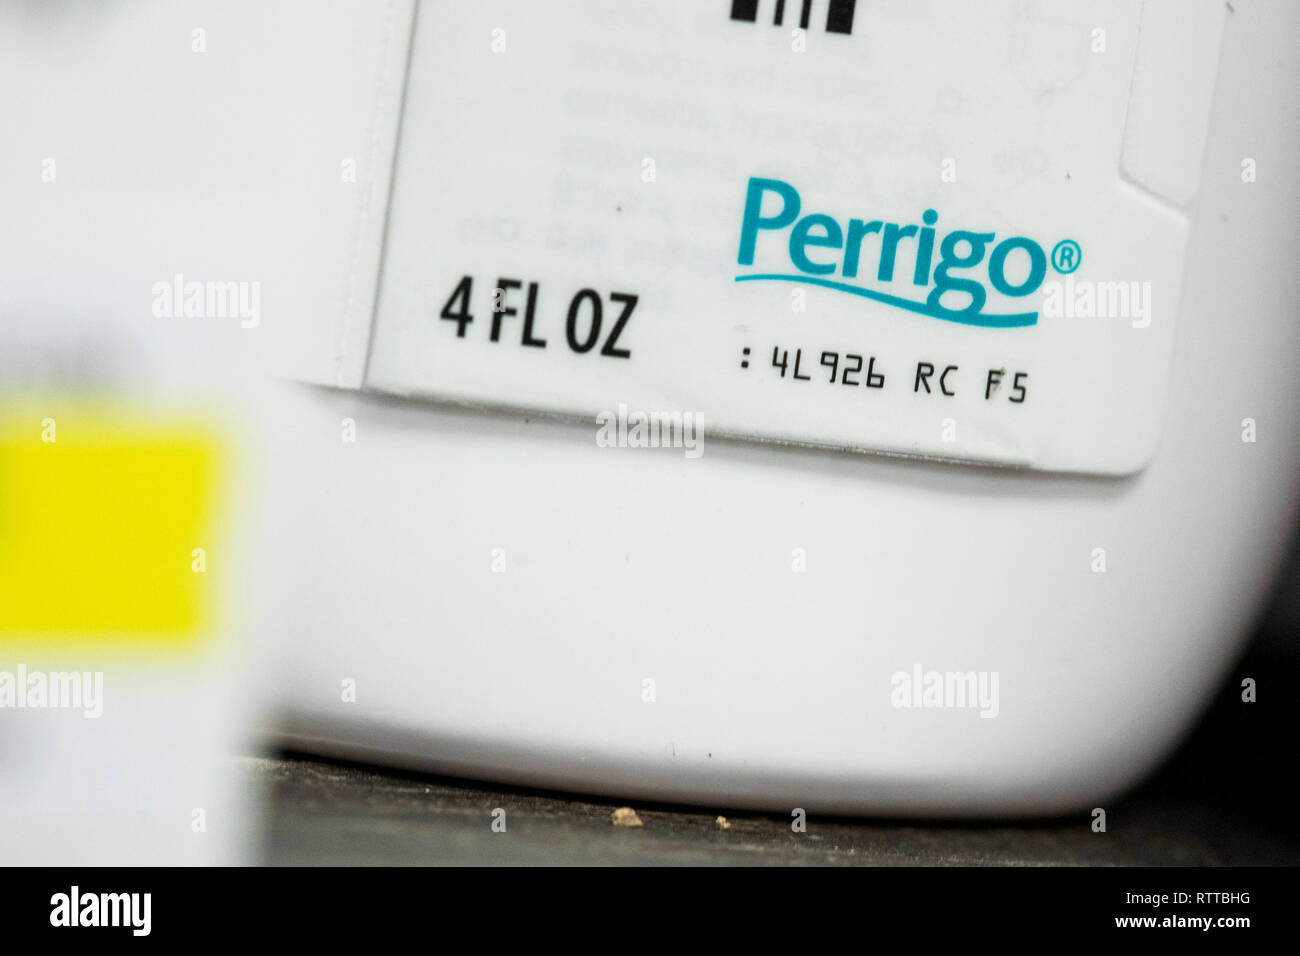 Un logo d'entreprise est considérée Perrigo sur l'emballage de produits pharmaceutiques sur ordonnance photographié dans une pharmacie. Banque D'Images